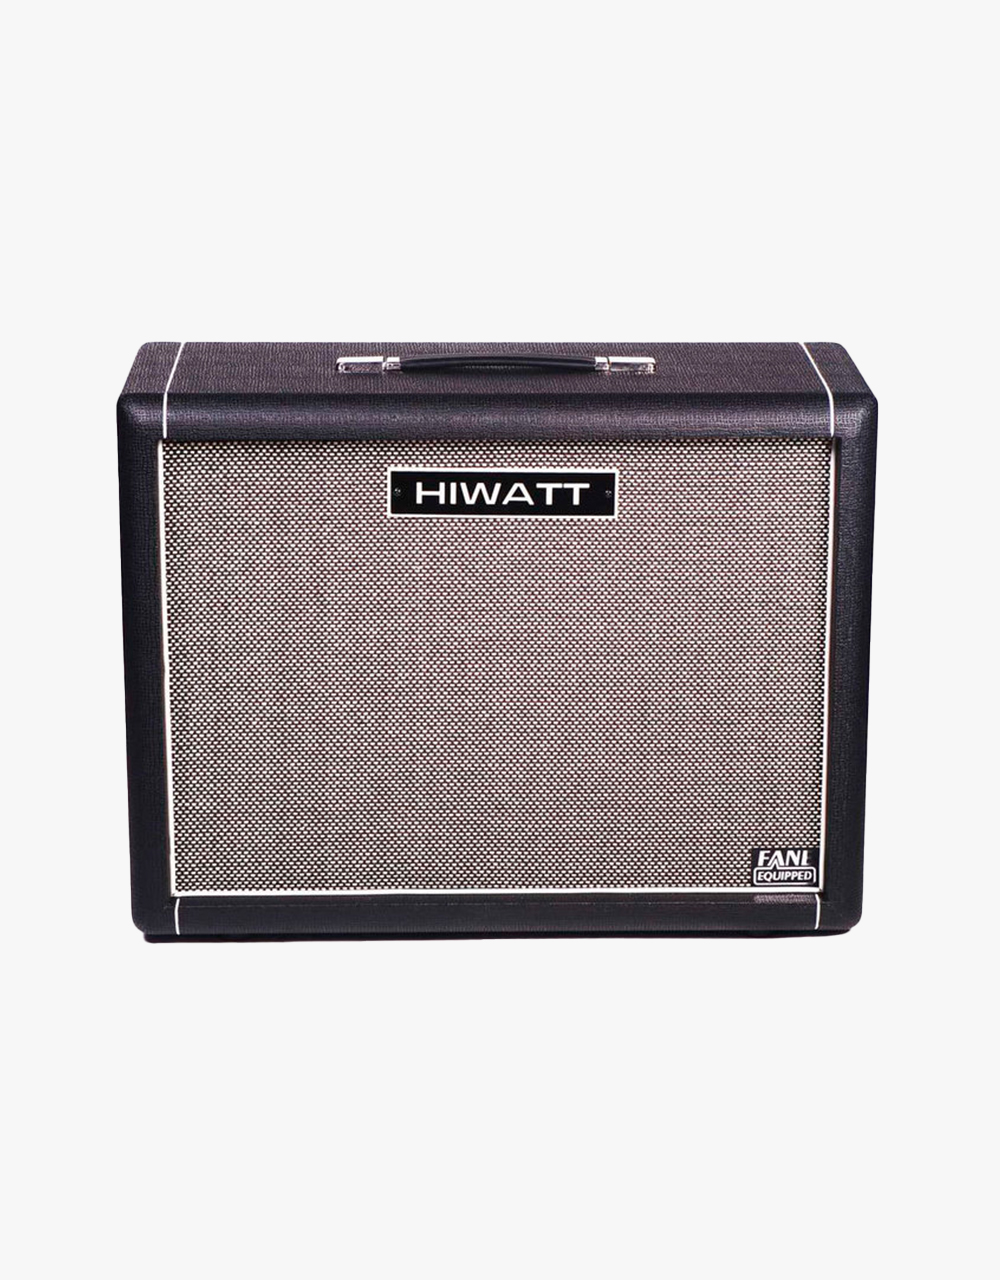 Кабинет для усилителя электрогитары HIWATT HG212, 200 Вт, 2Х12" Hiwatt Fane Speaker - купить в "Гитарном Клубе"